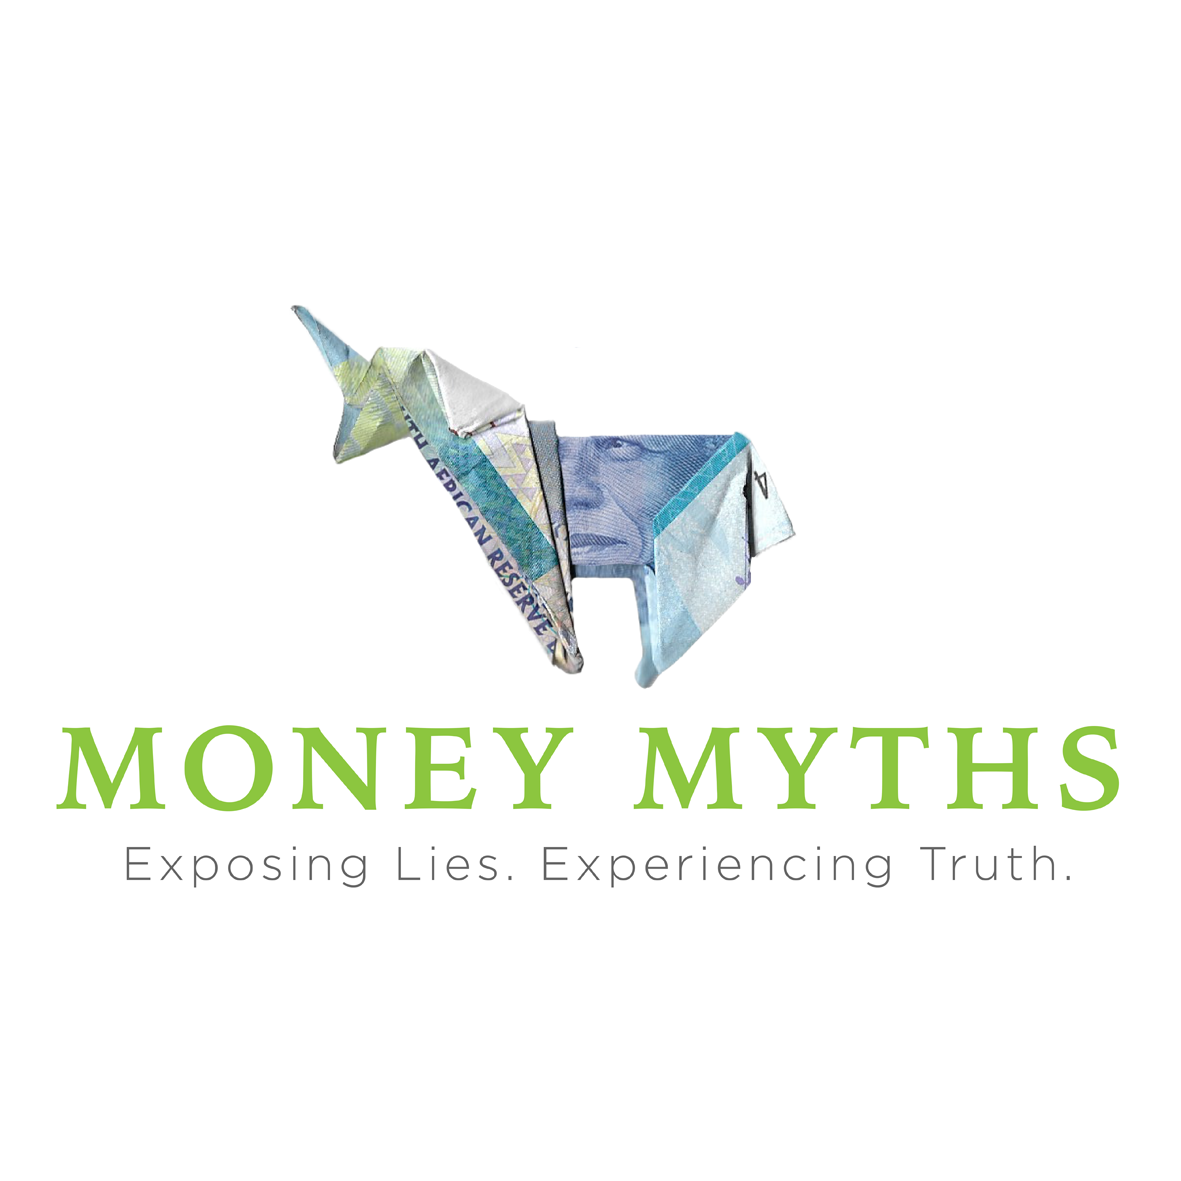 Money Myths: Myth #2 The Church Wants My Money